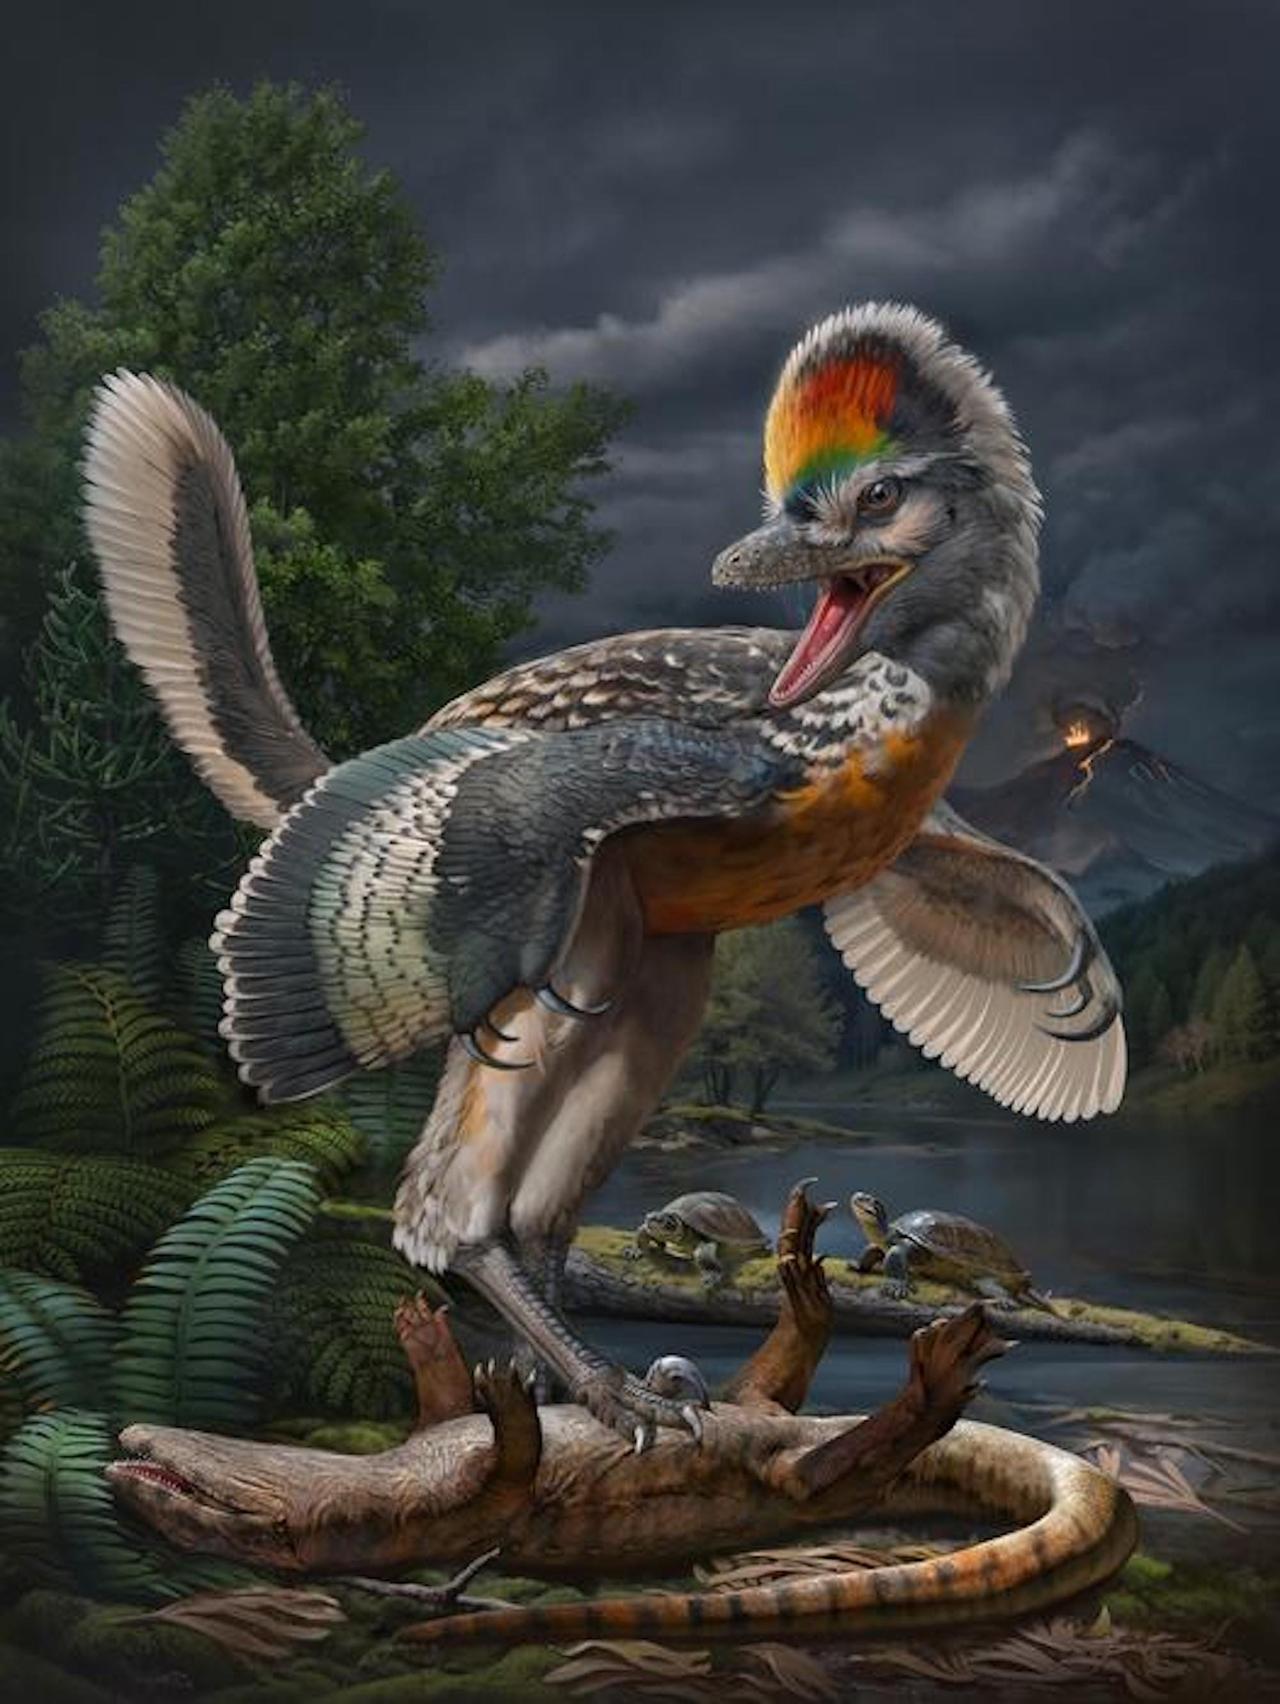 ｢フジアンヴェナトル・プロディジオサス｣の想像図。この恐竜の化石の発見により、これまで謎とされてきたジュラ紀前後における鳥類の進化の過程が明らかになるかもしれない。